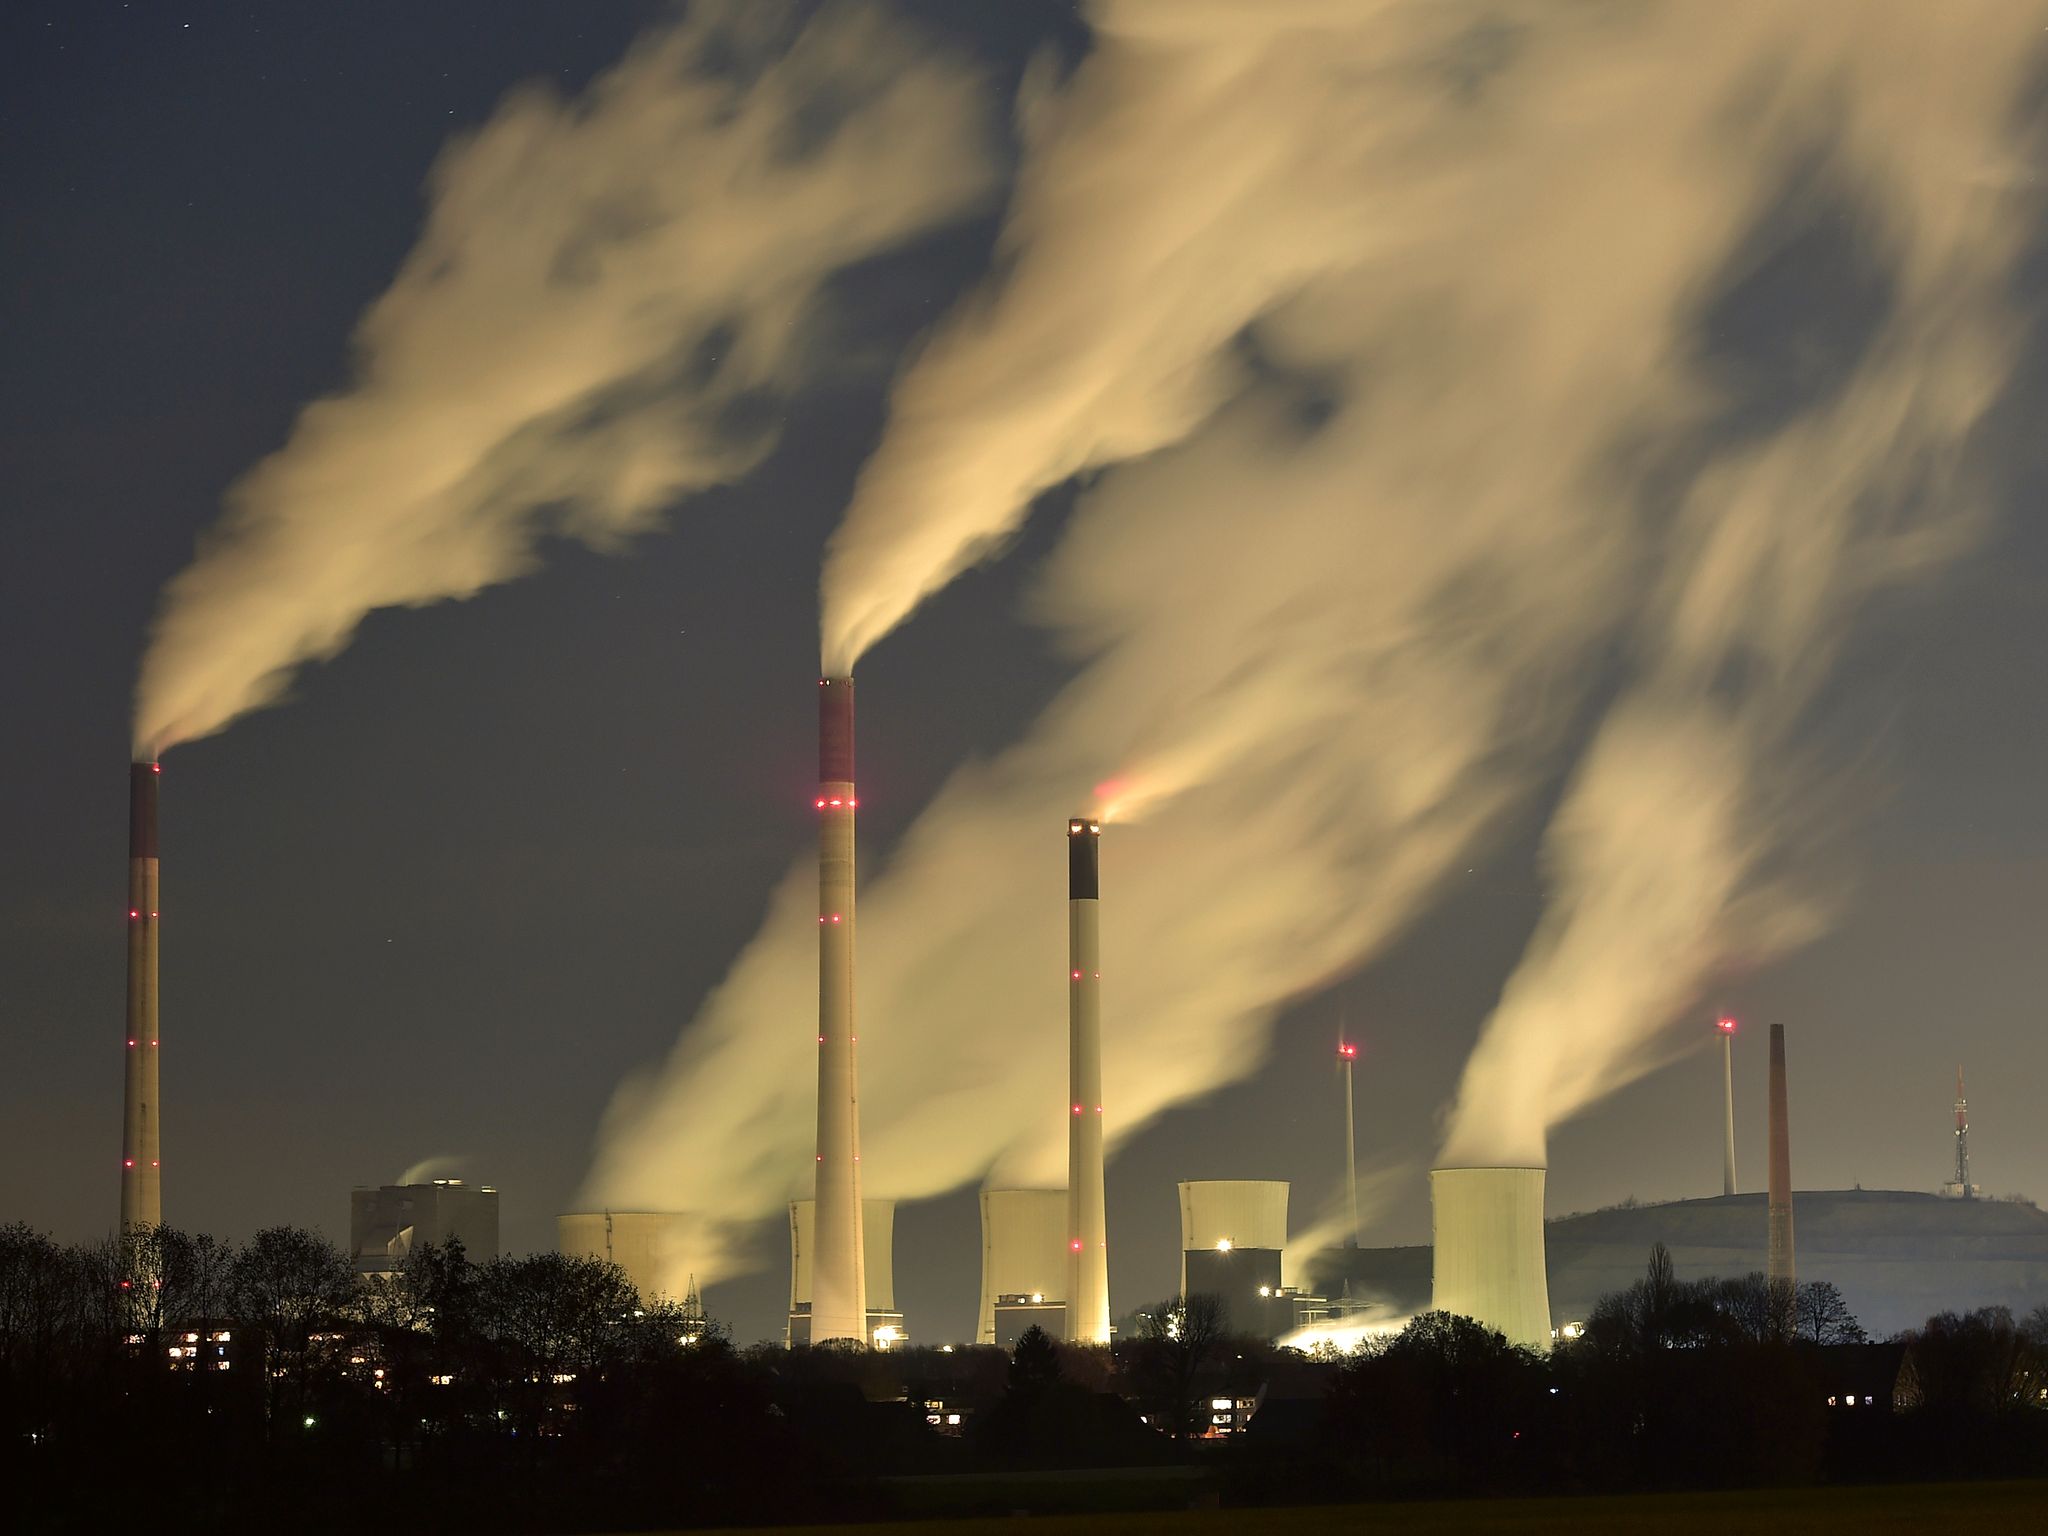 More information about "Ιστορικό ρεκόρ για το διοξείδιο του άνθρακα στην ατμόσφαιρα- Ξεπέρασε τα 421 μέρη ανά εκατομμύριο"